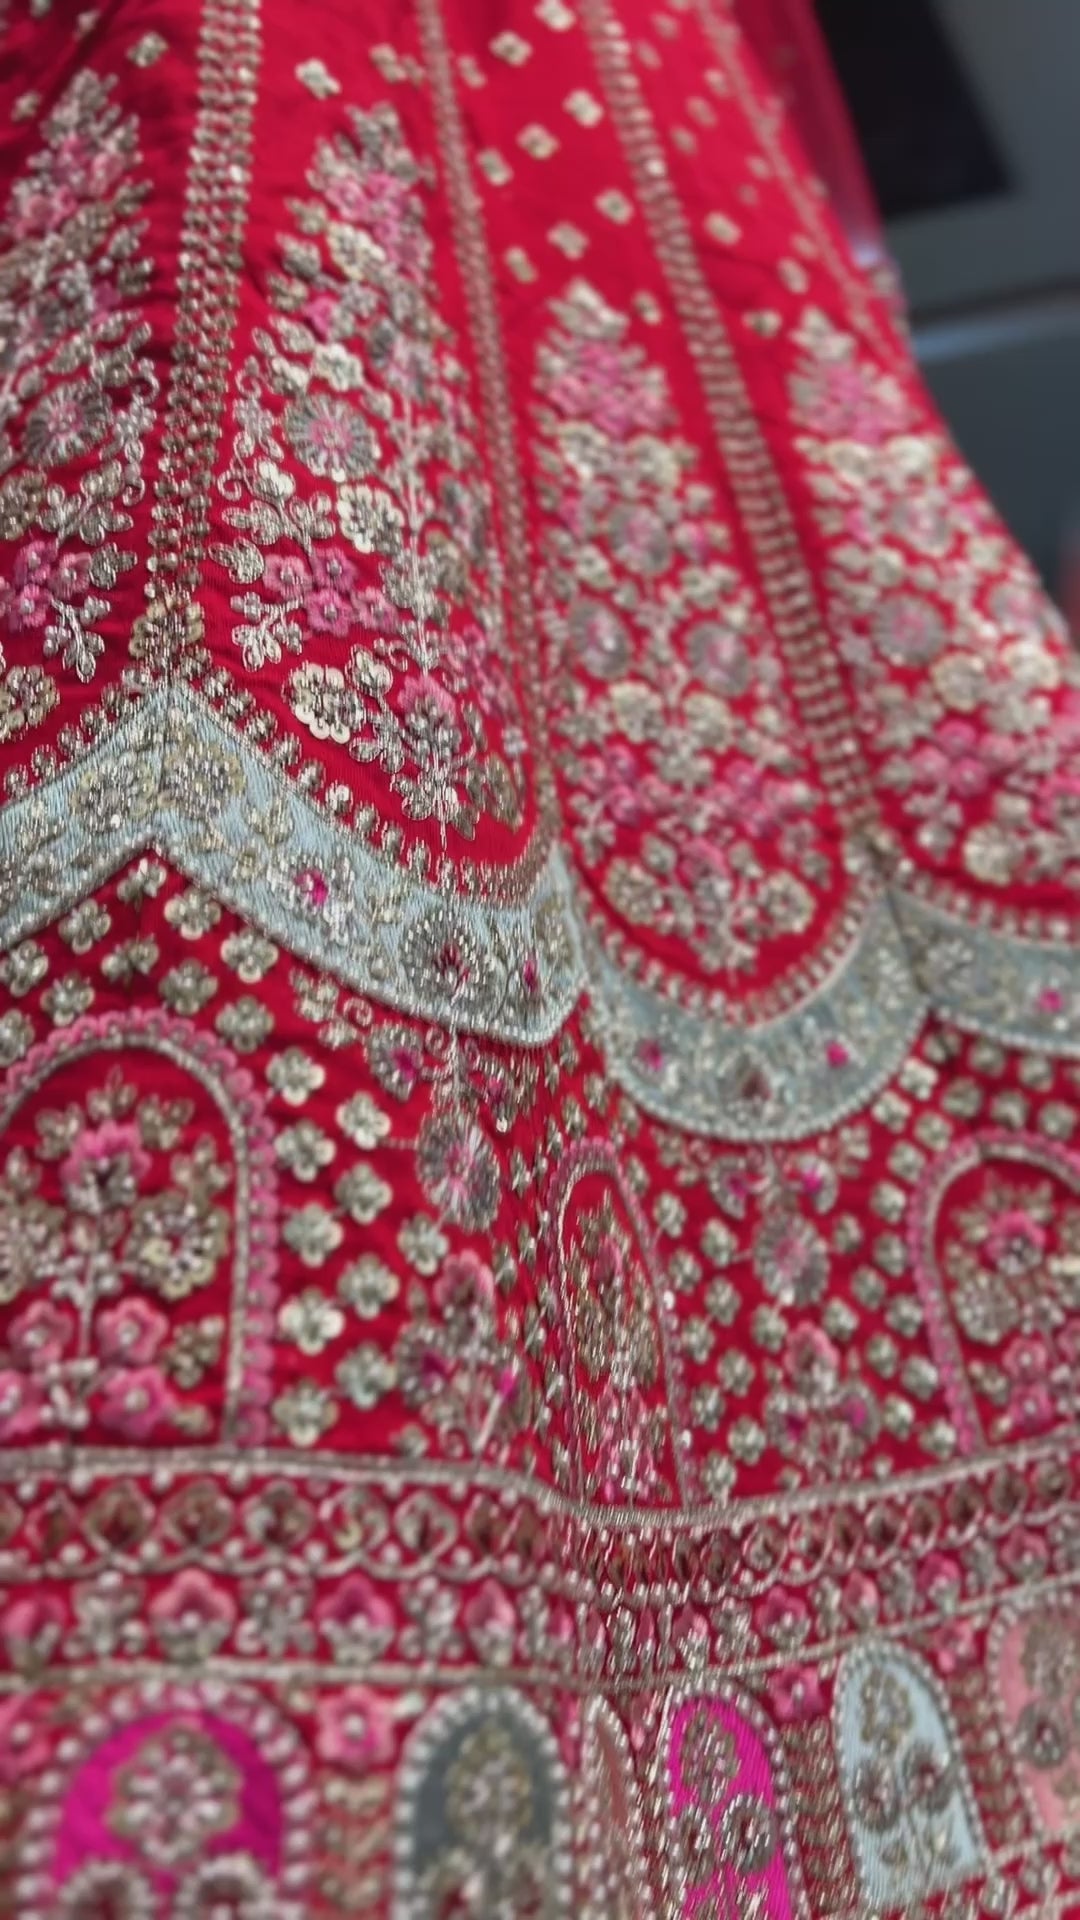 Sabyasachi Designer Brown Lehenga Choli Embellished With Beautiful Shimmer  Dori Work Wedding Lehenga Choli Party Wear Lehenga Choli - Etsy